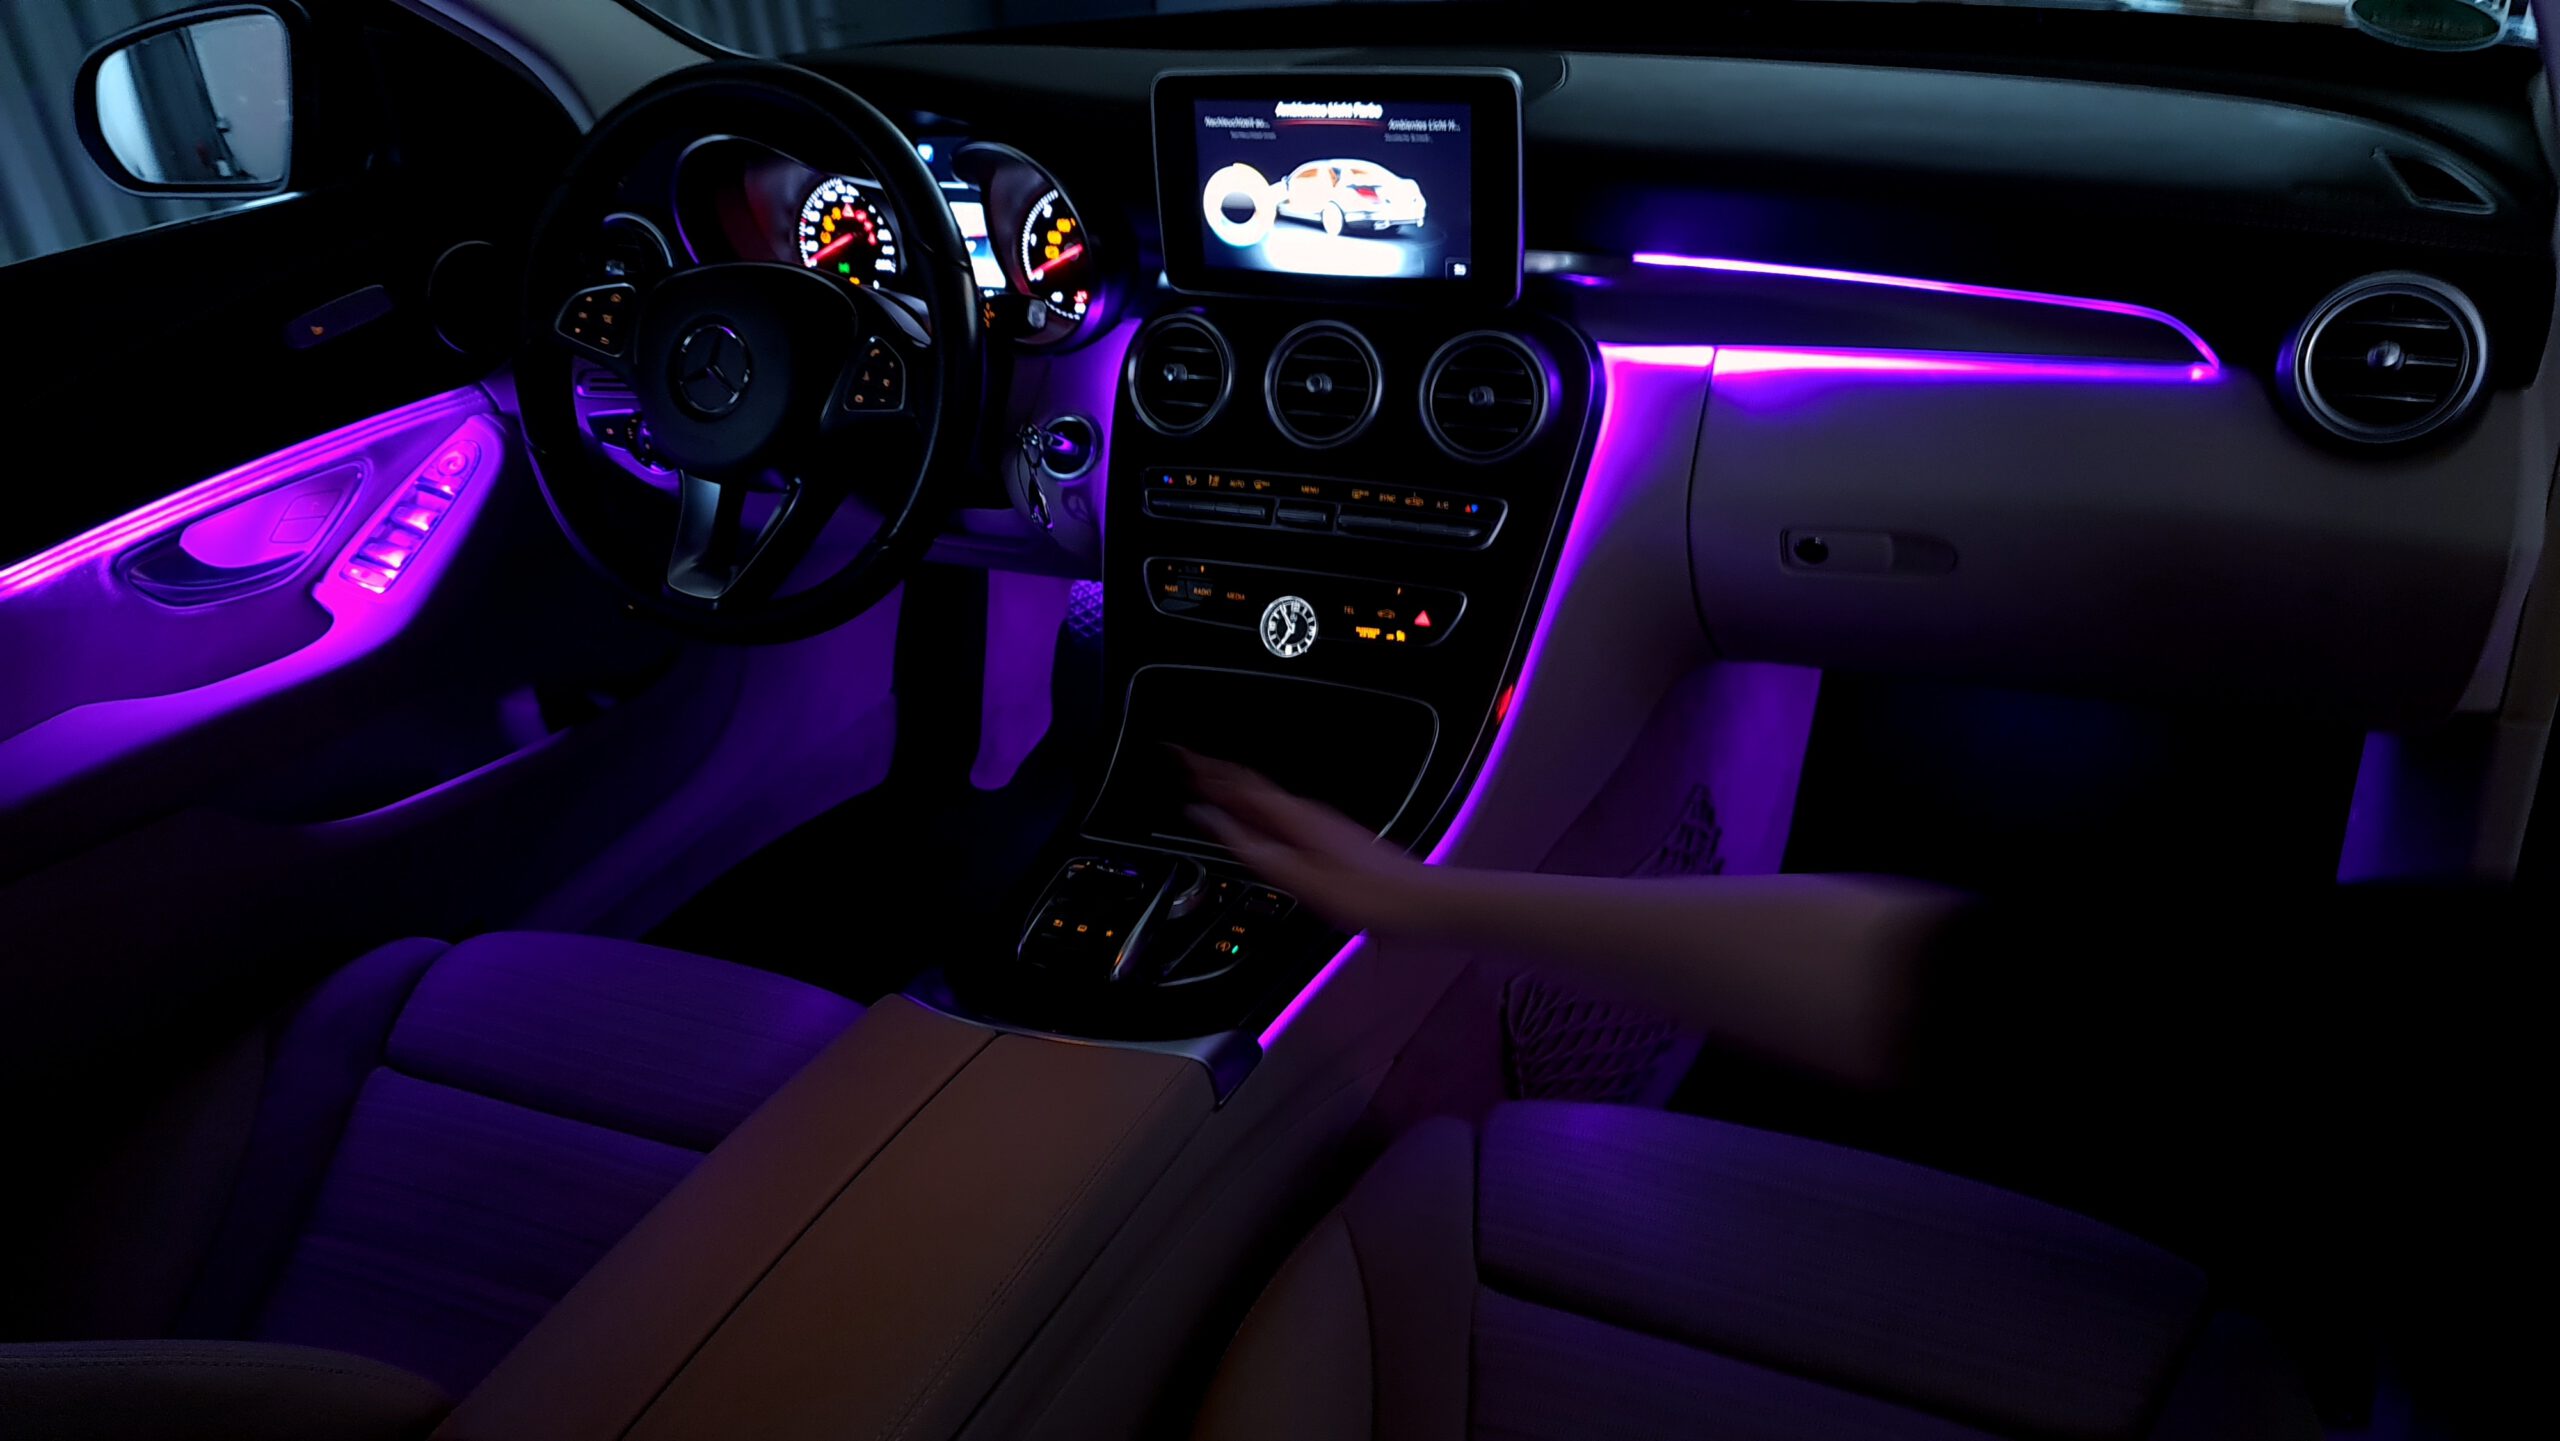 Mercedes W205: Nachrüstung 64 Farben Ambientebeleuchtung - CarHex